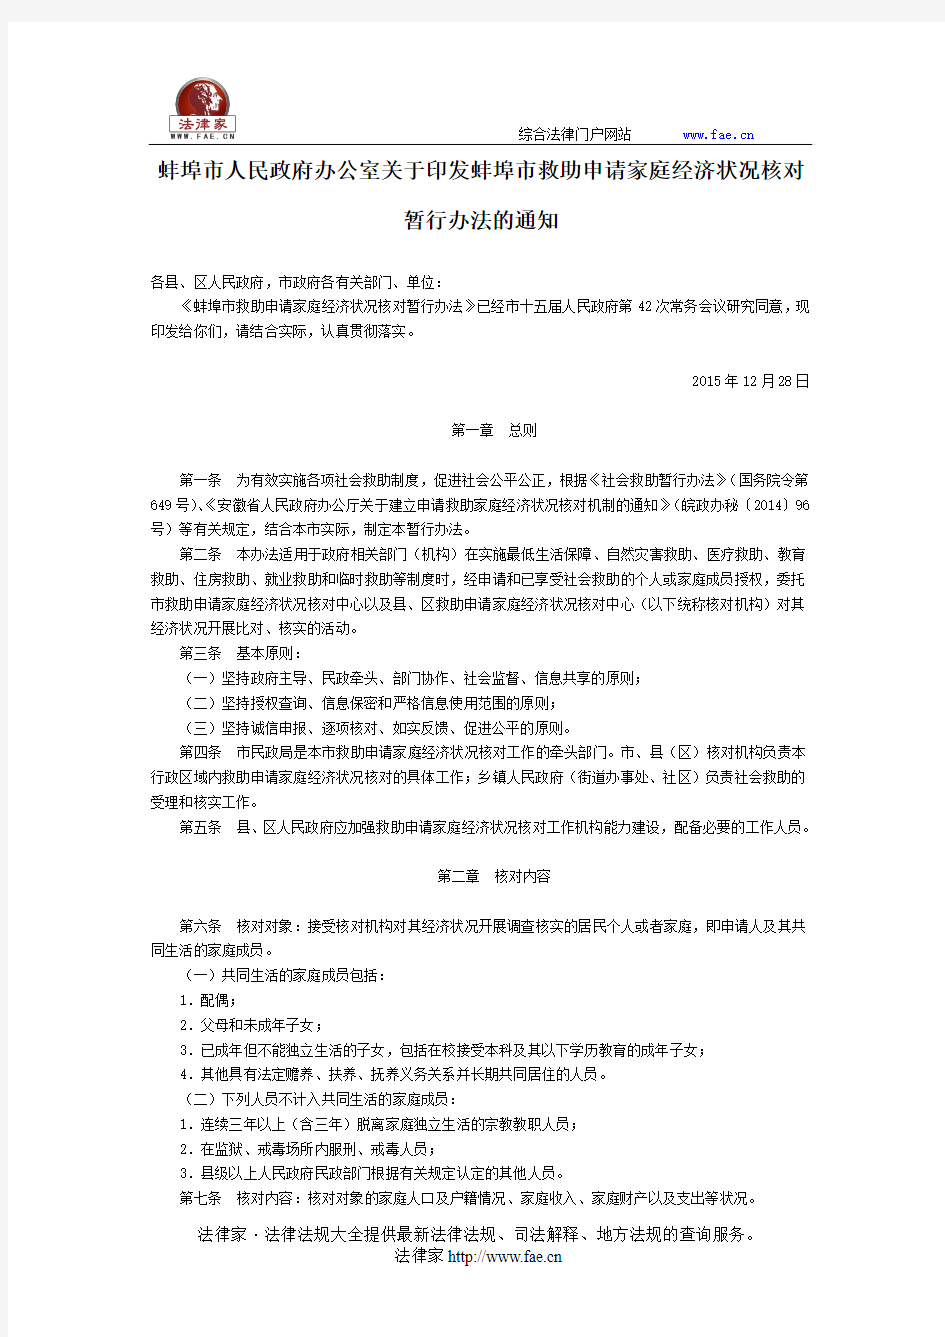 蚌埠市人民政府办公室关于印发蚌埠市救助申请家庭经济状况核对暂行办法的通知-地方规范性文件